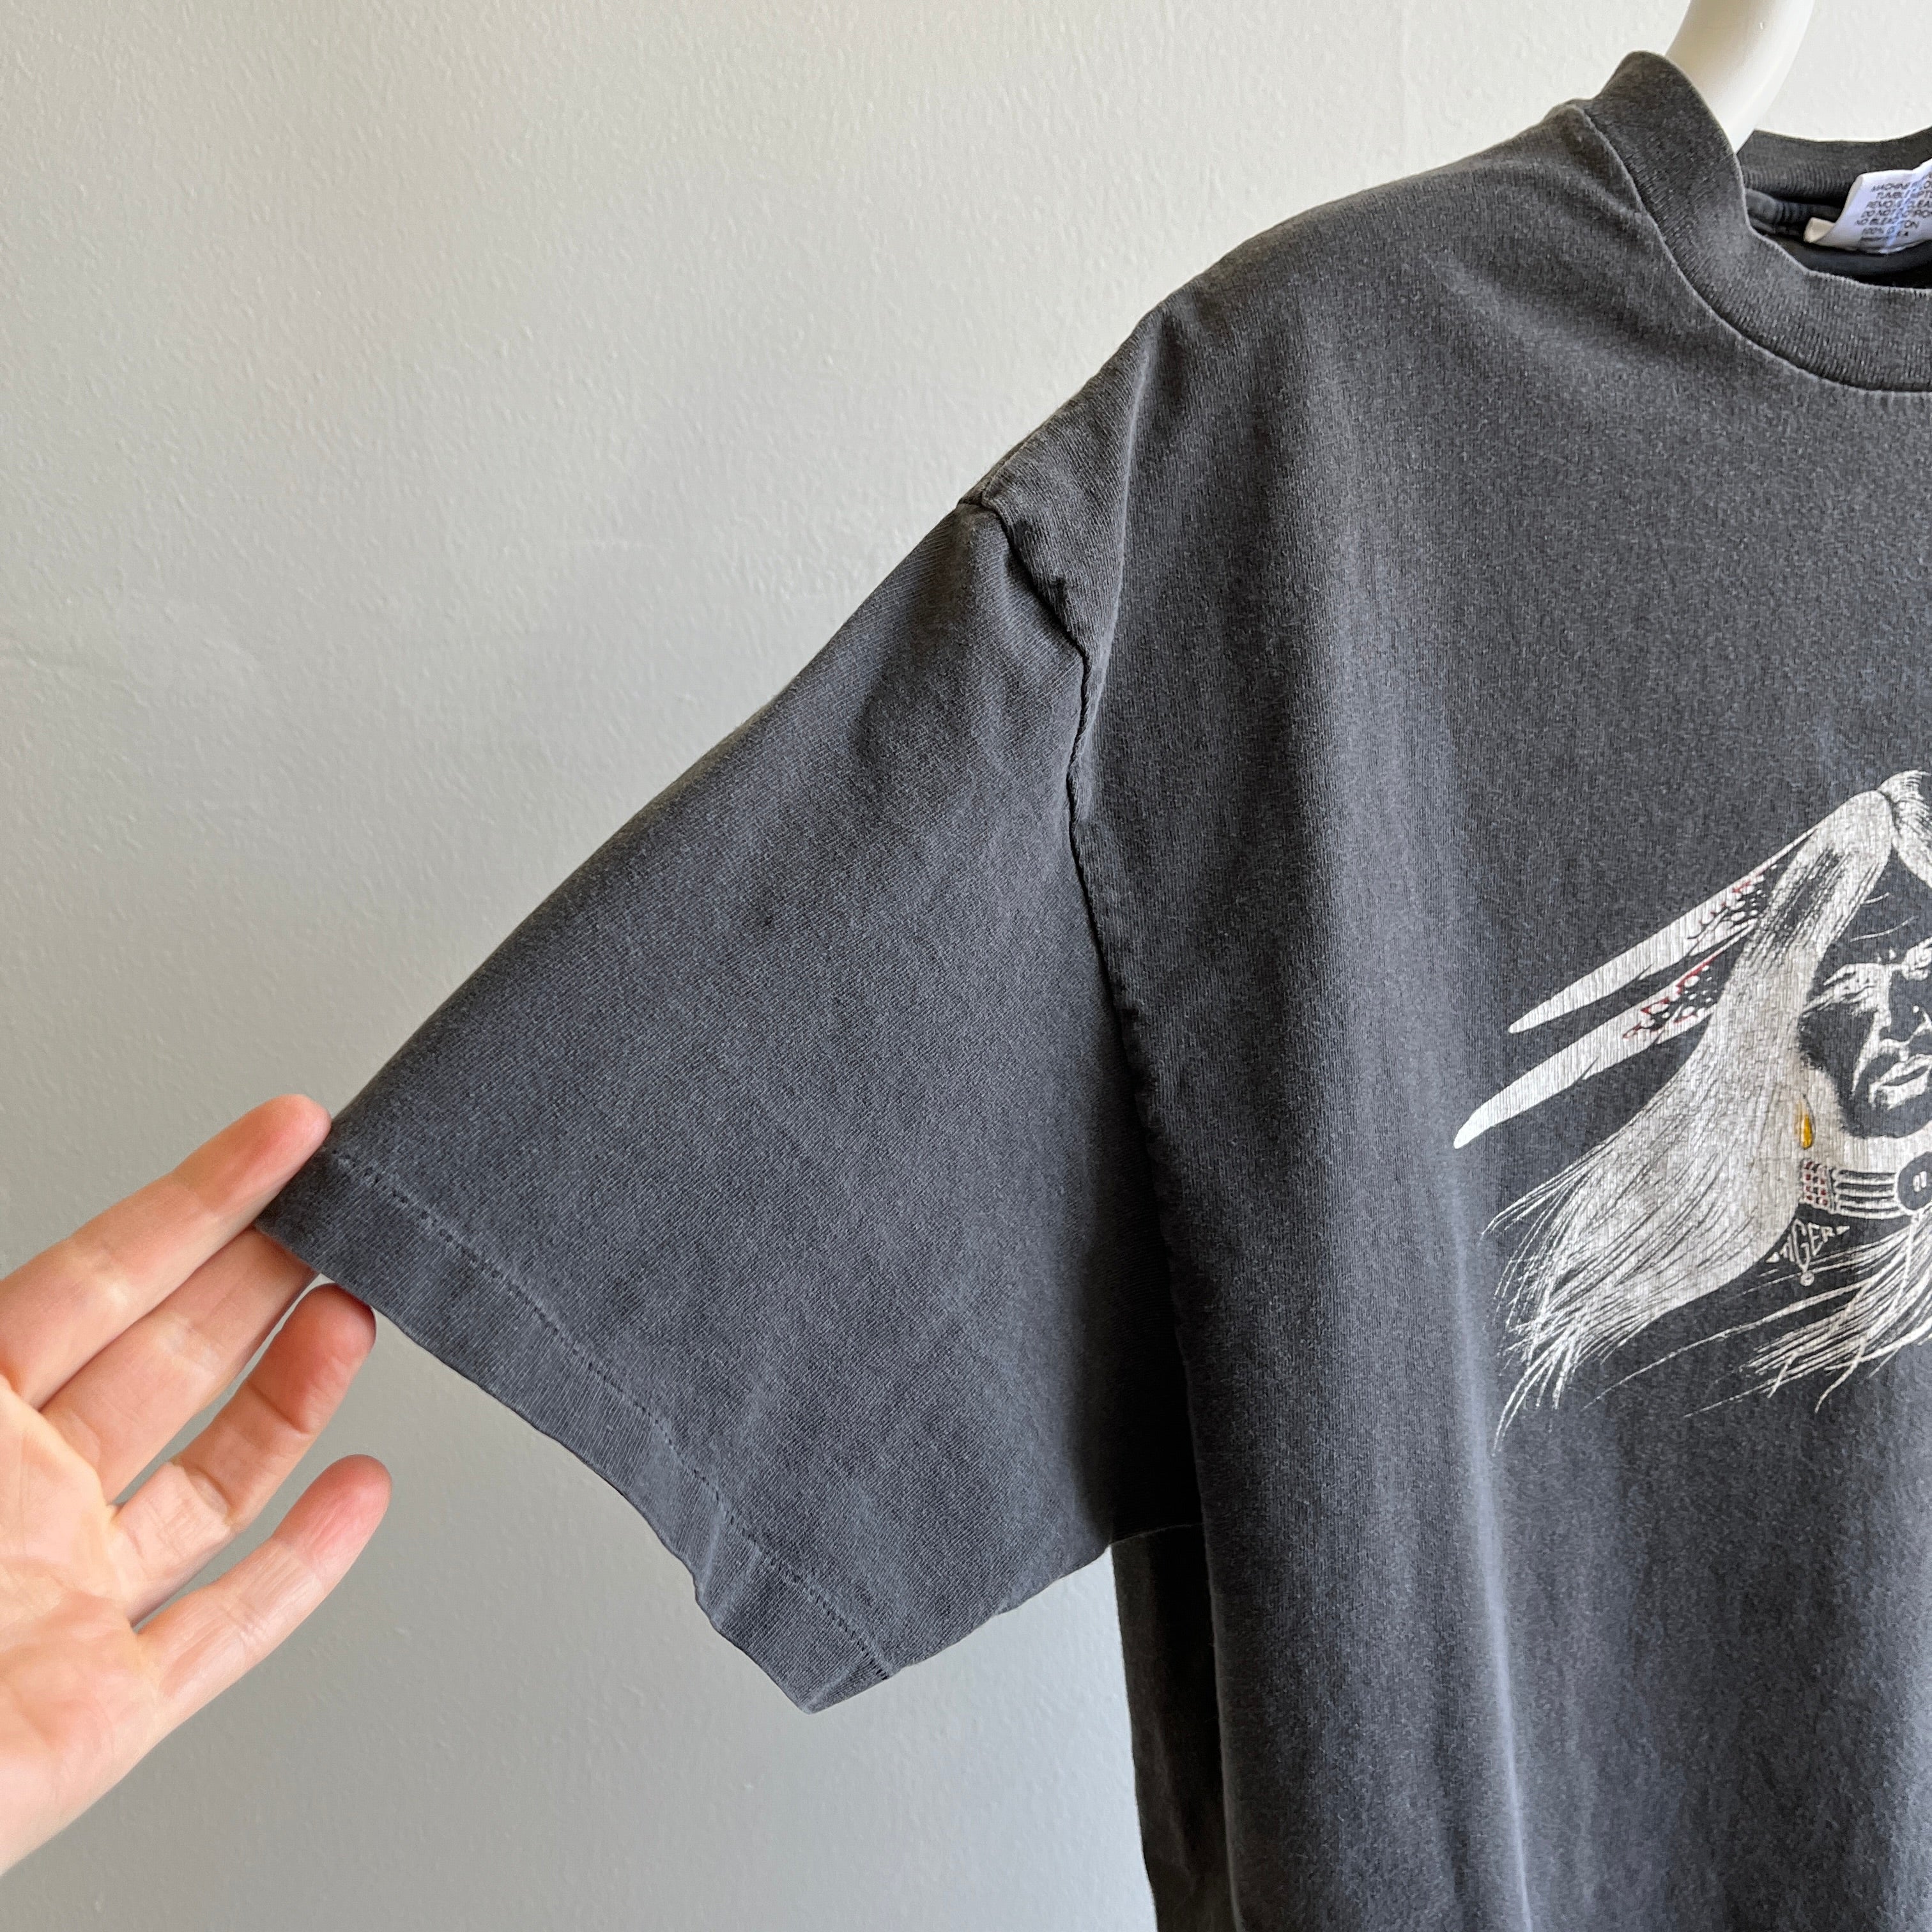 T-shirt aigle amérindien attrape-rêves fané des années 1980